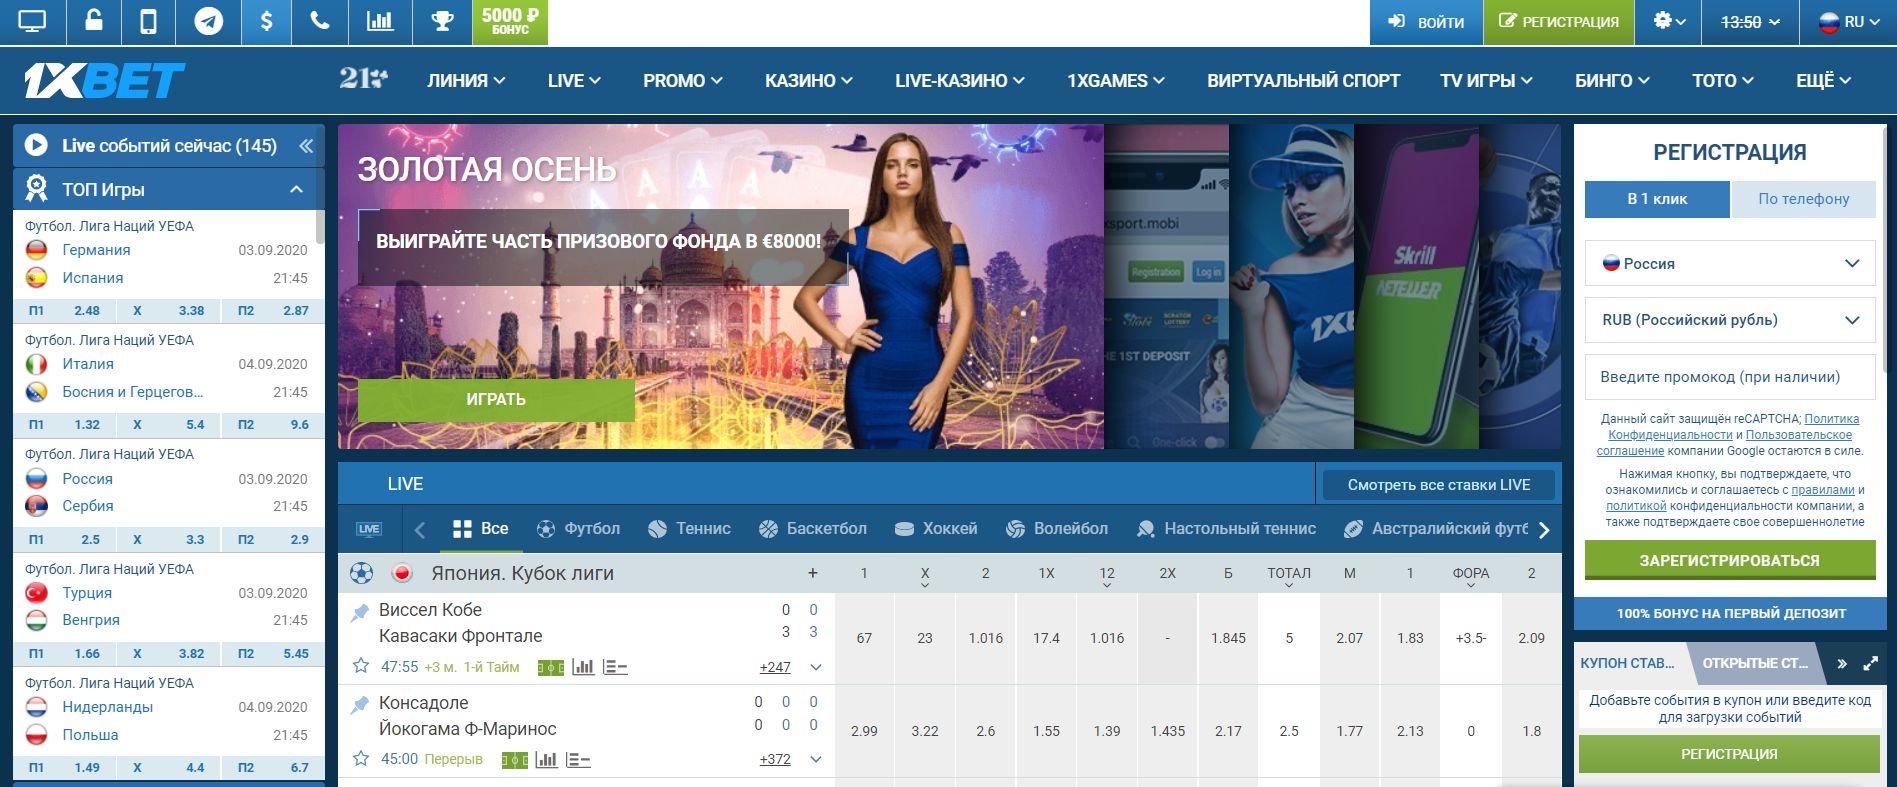 Керченская букмекерская контора честные онлайн казино с рублевыми ставками